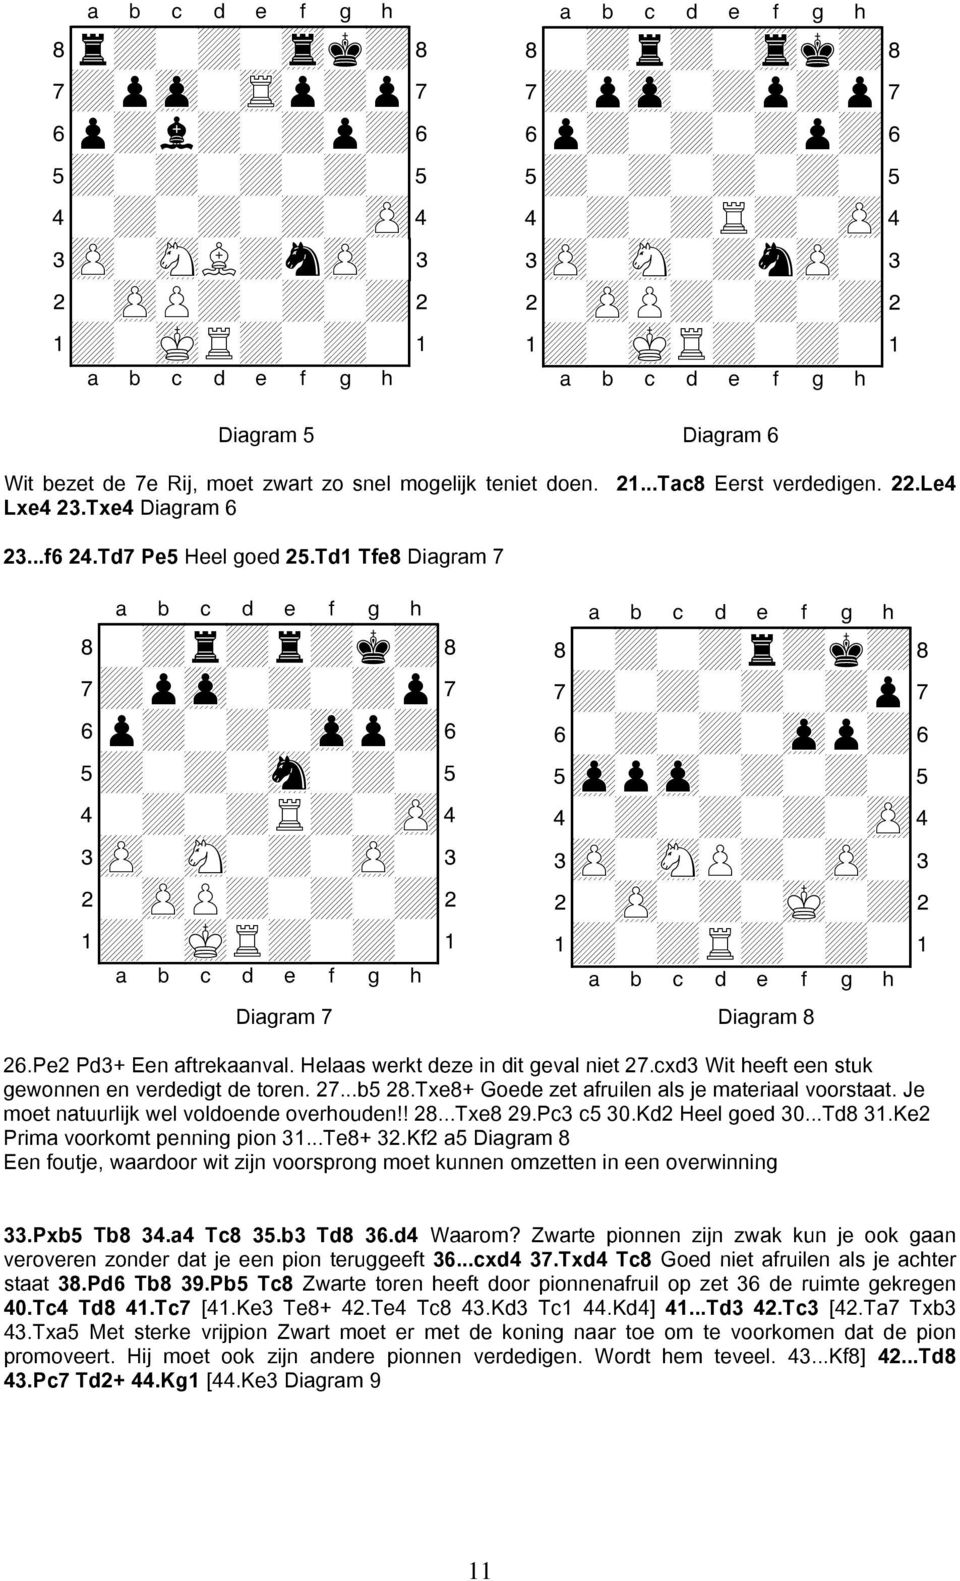 cxd3 Wit heeft een stuk gewonnen en verdedigt de toren. 27...b5 28.Txe8+ Goede zet afruilen als je materiaal voorstaat. Je moet natuurlijk wel voldoende overhouden!! 28...Txe8 29.Pc3 c5 30.